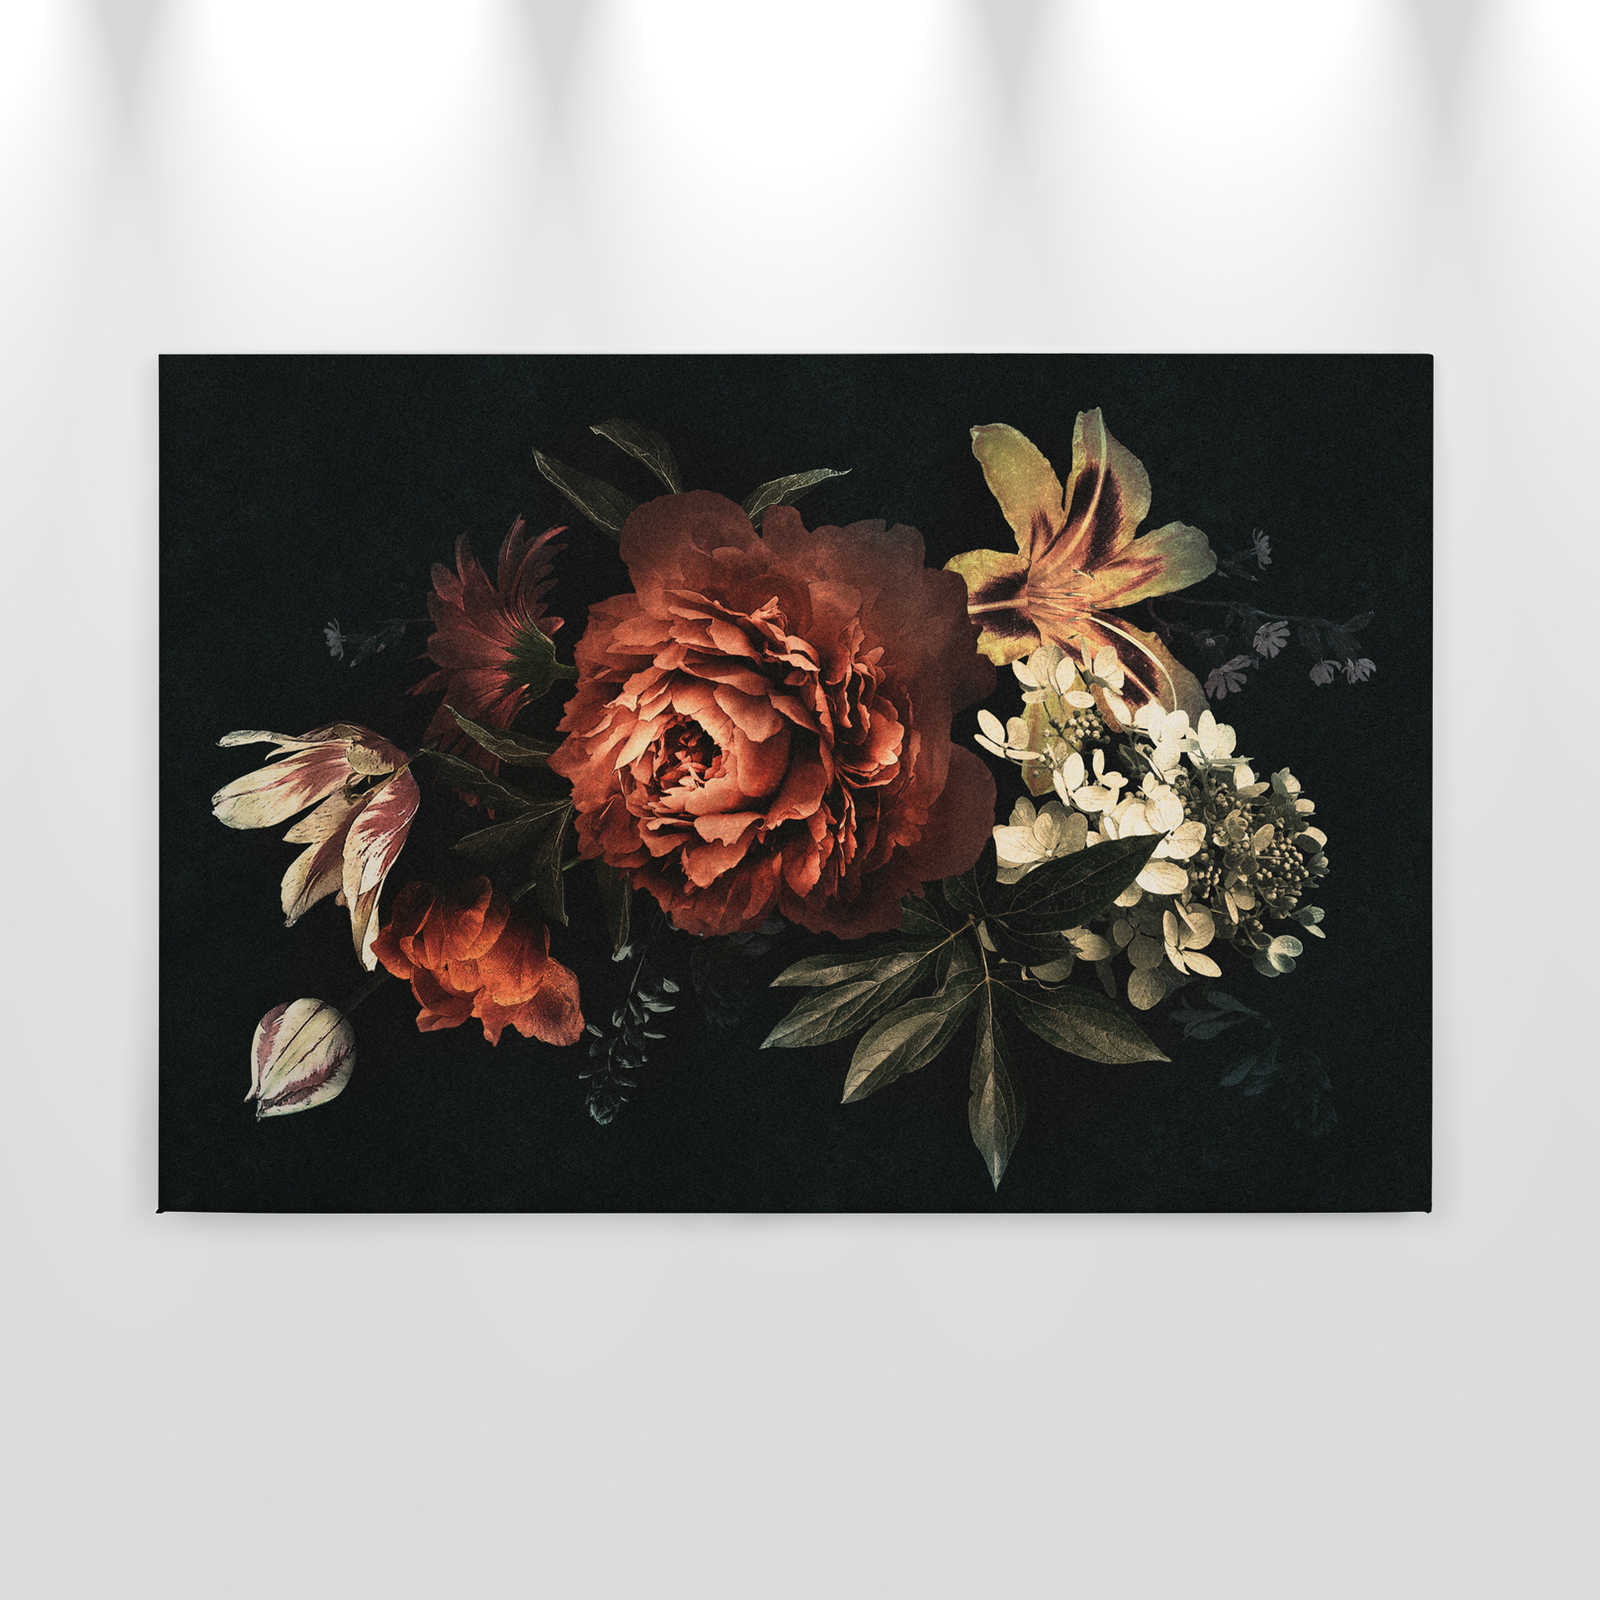             Drama queen 1 - Bouquet de fleurs Tableau sur toile avec fond sombre en structure de carton - 0,90 m x 0,60 m
        